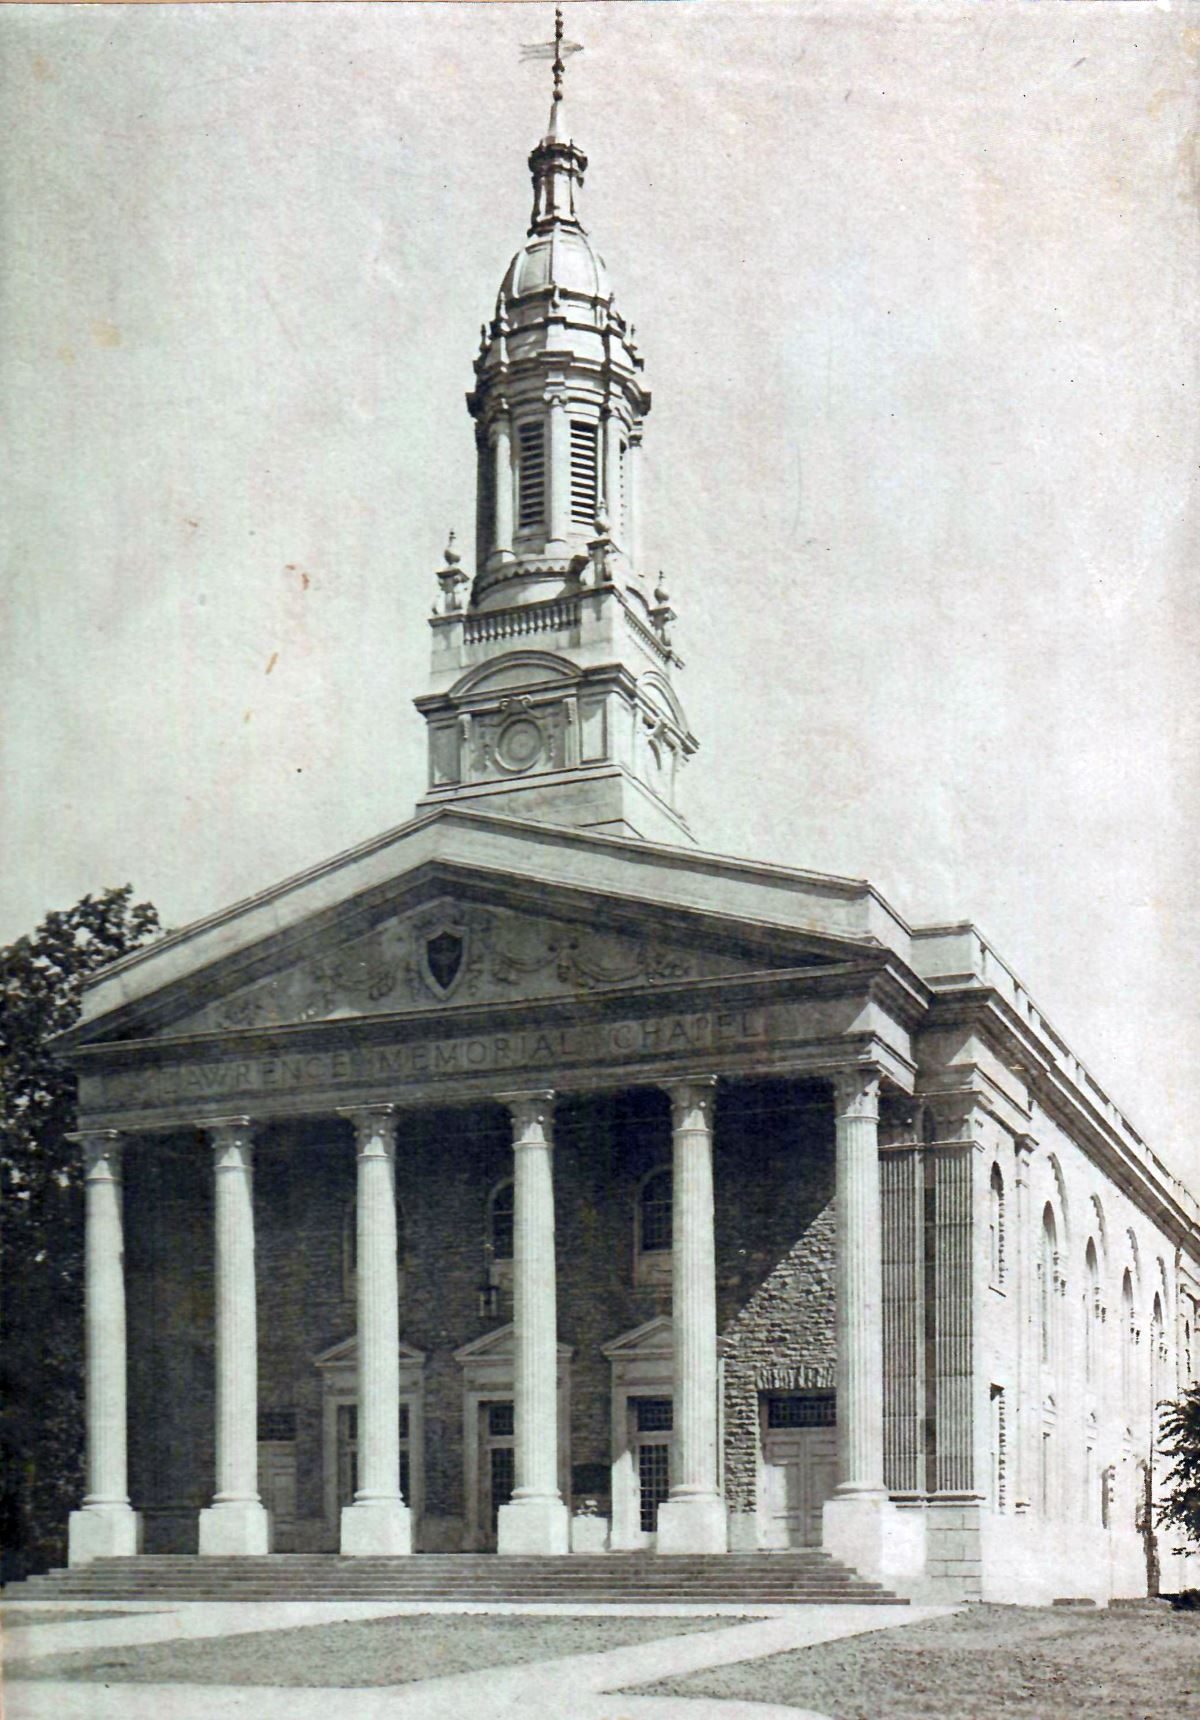 Memorial Chapel, 1920